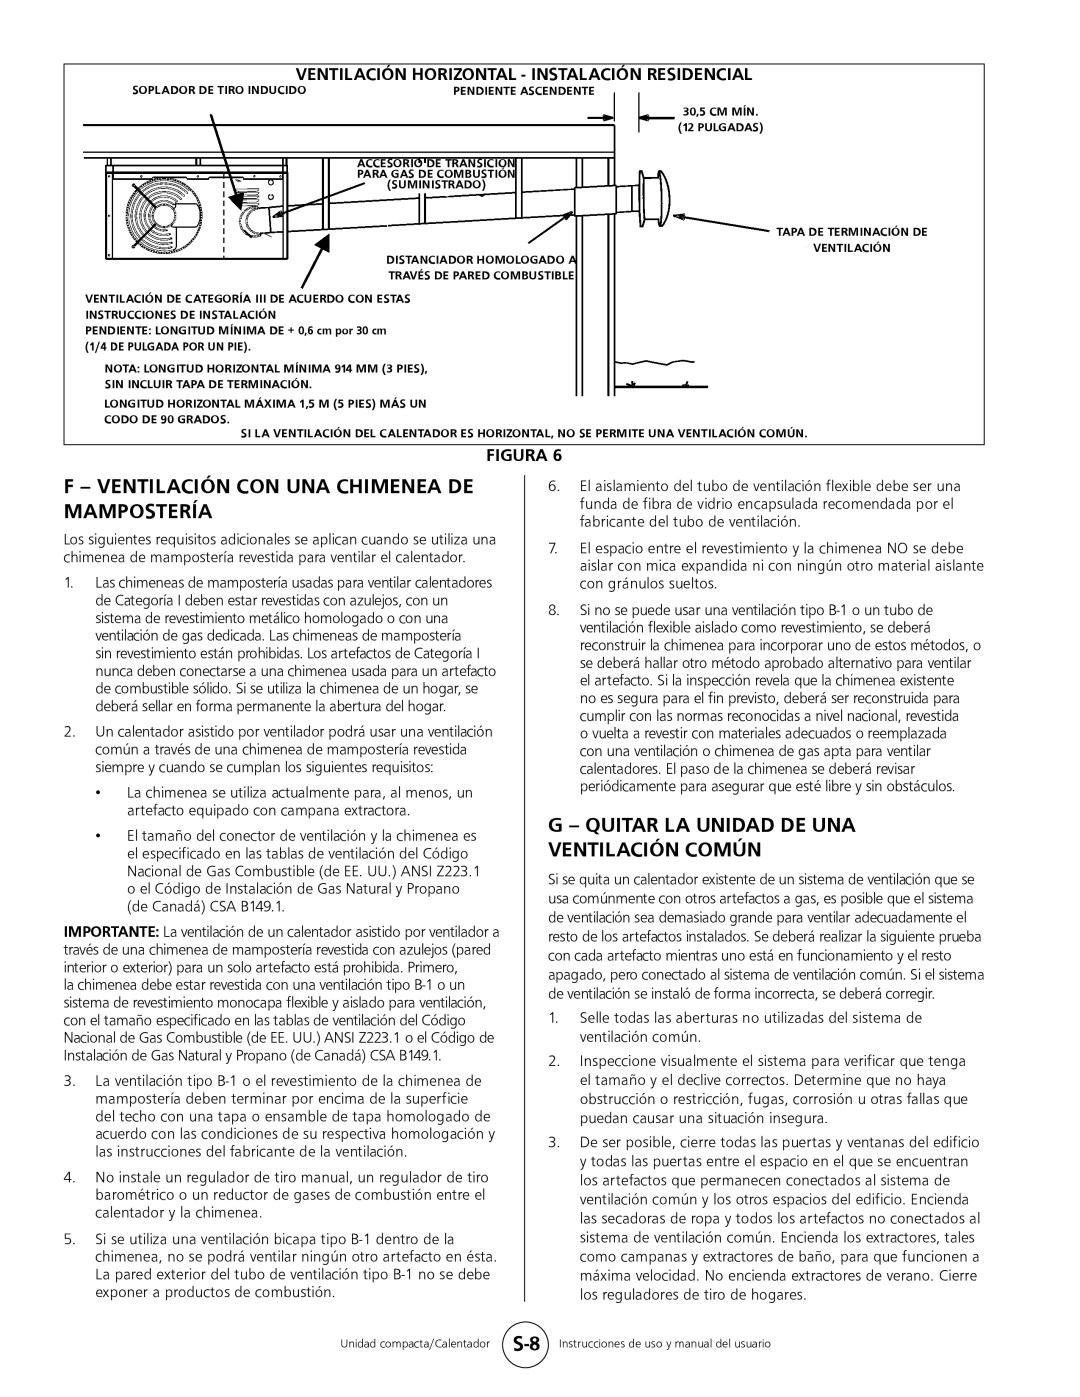 Mr. Heater MHU 50 F - Ventilación Con Una Chimenea De Mampostería, G - Quitar La Unidad De Una Ventilación Común, Figura 